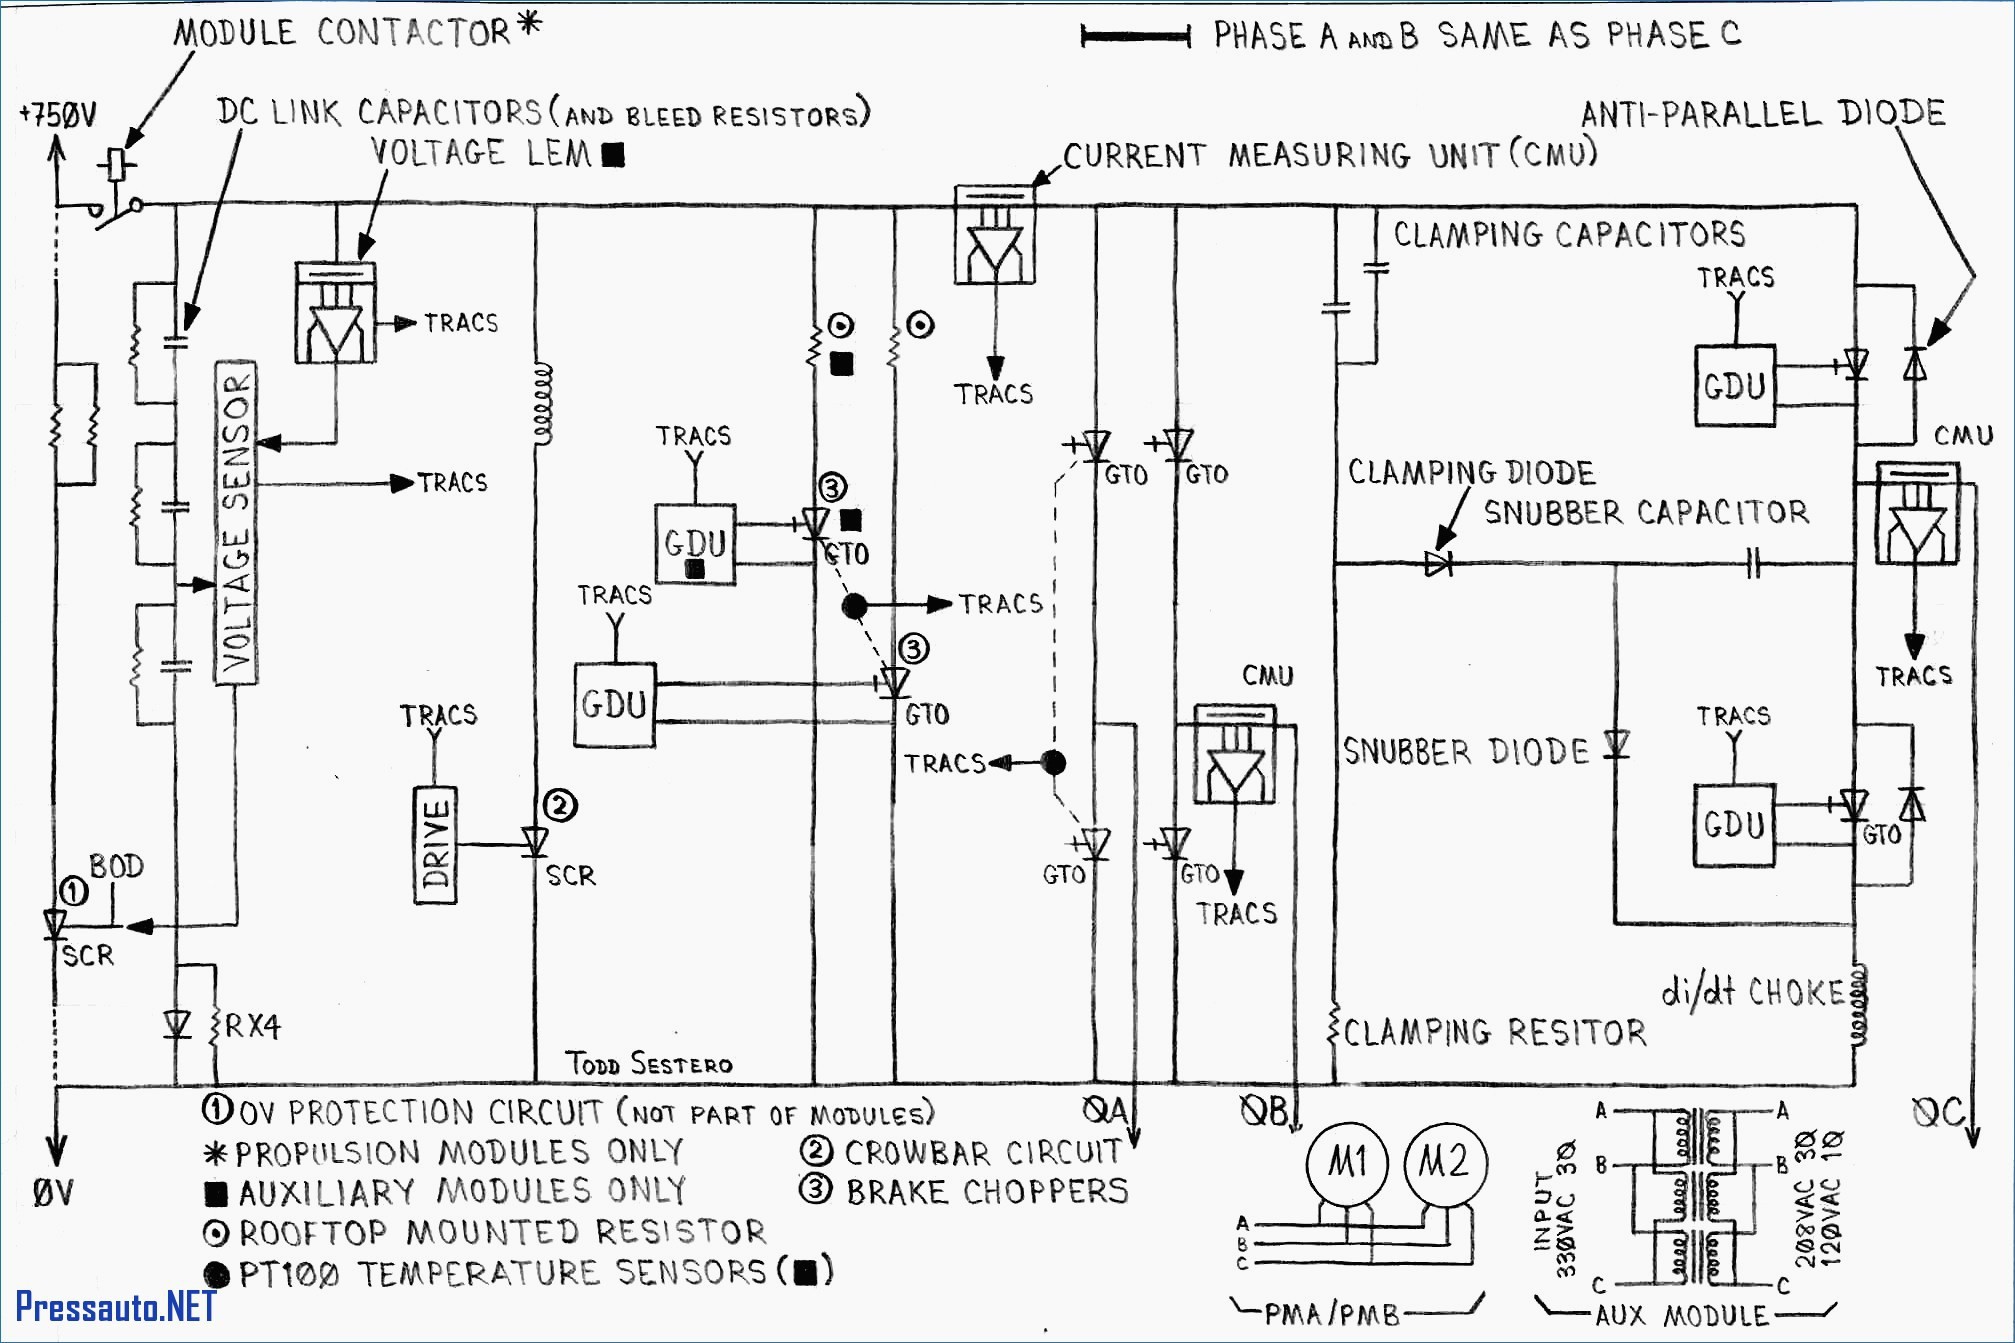 Modine Gas Heater Wiring Diagram Luxury Dayton Unit Heater Wiring Diagram Stove Also Modine Gas